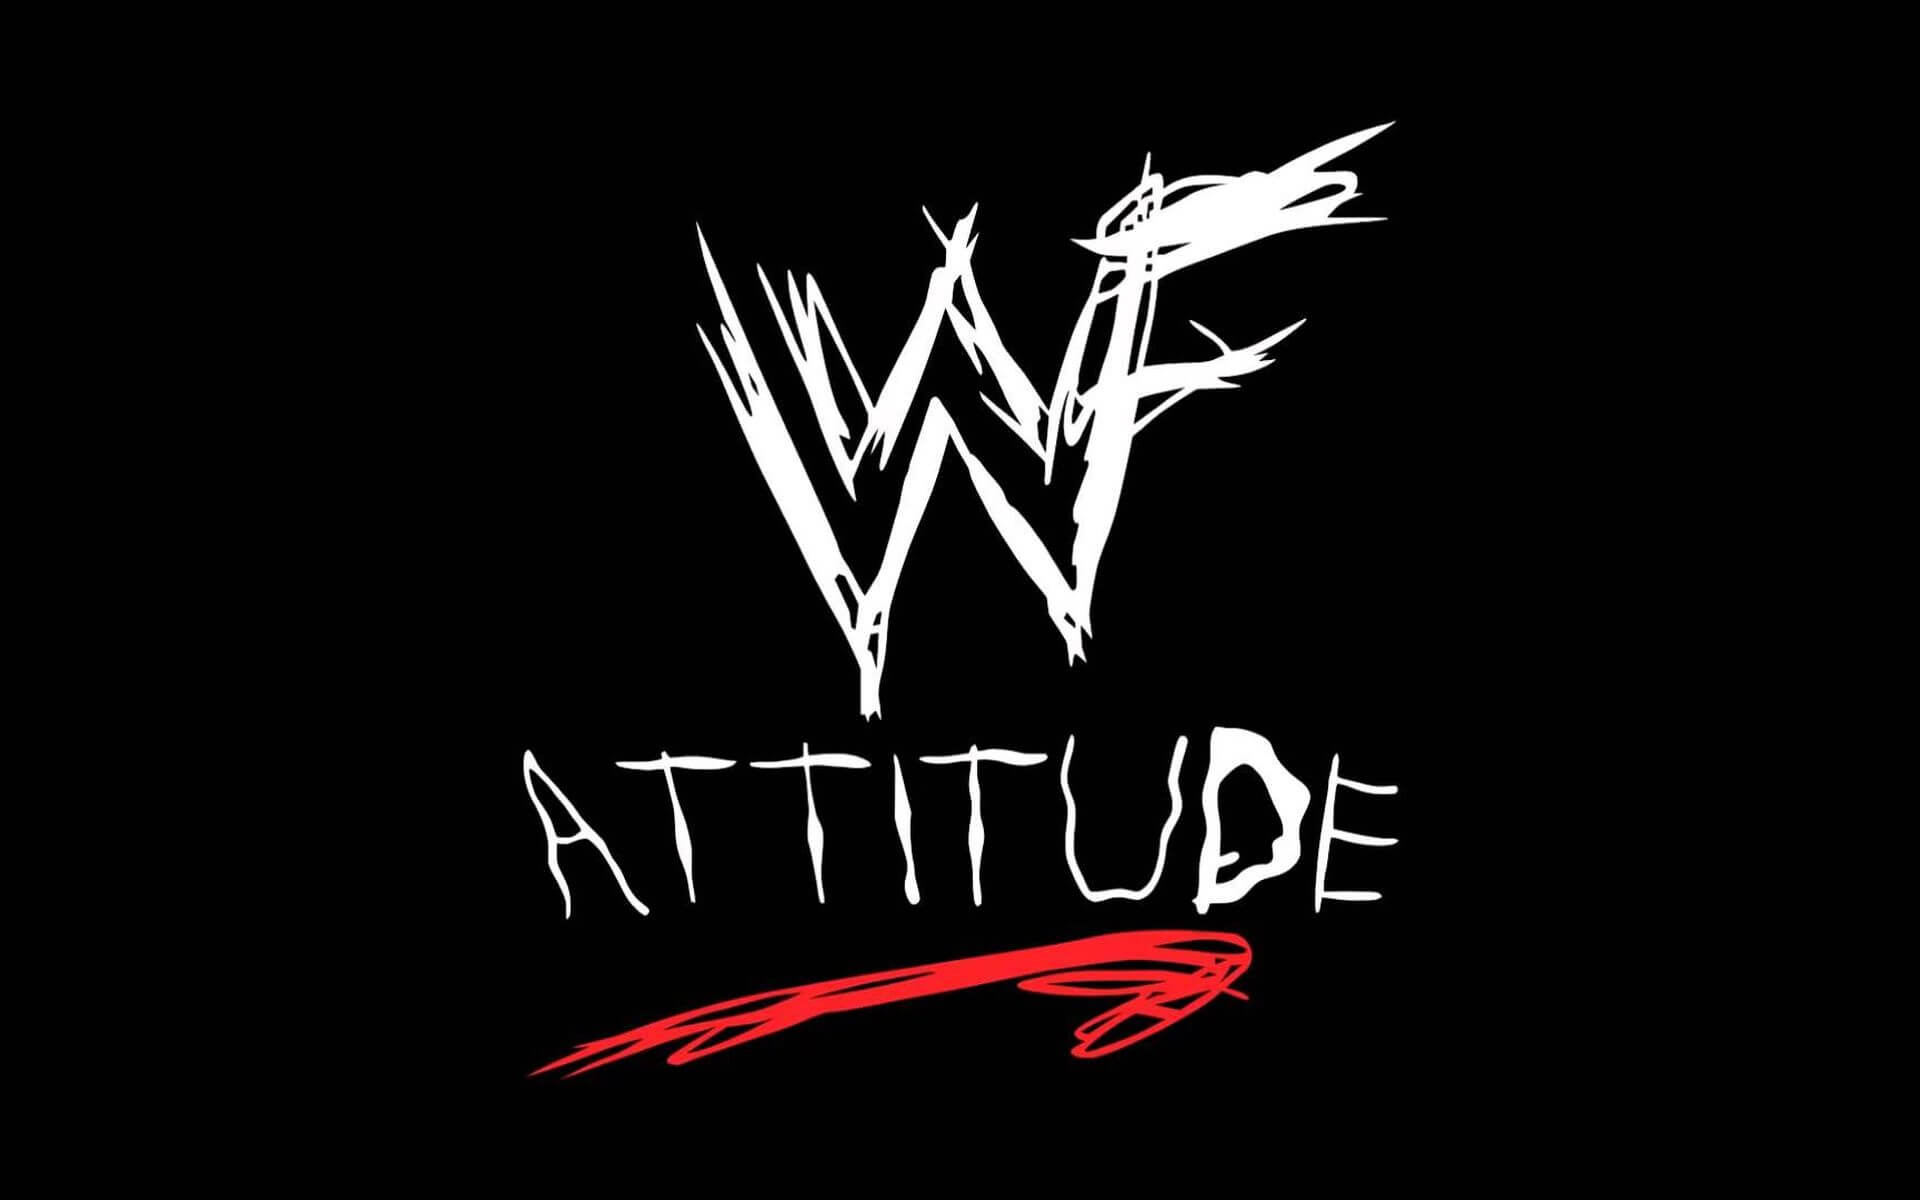 Status attitude [Best] Attitude